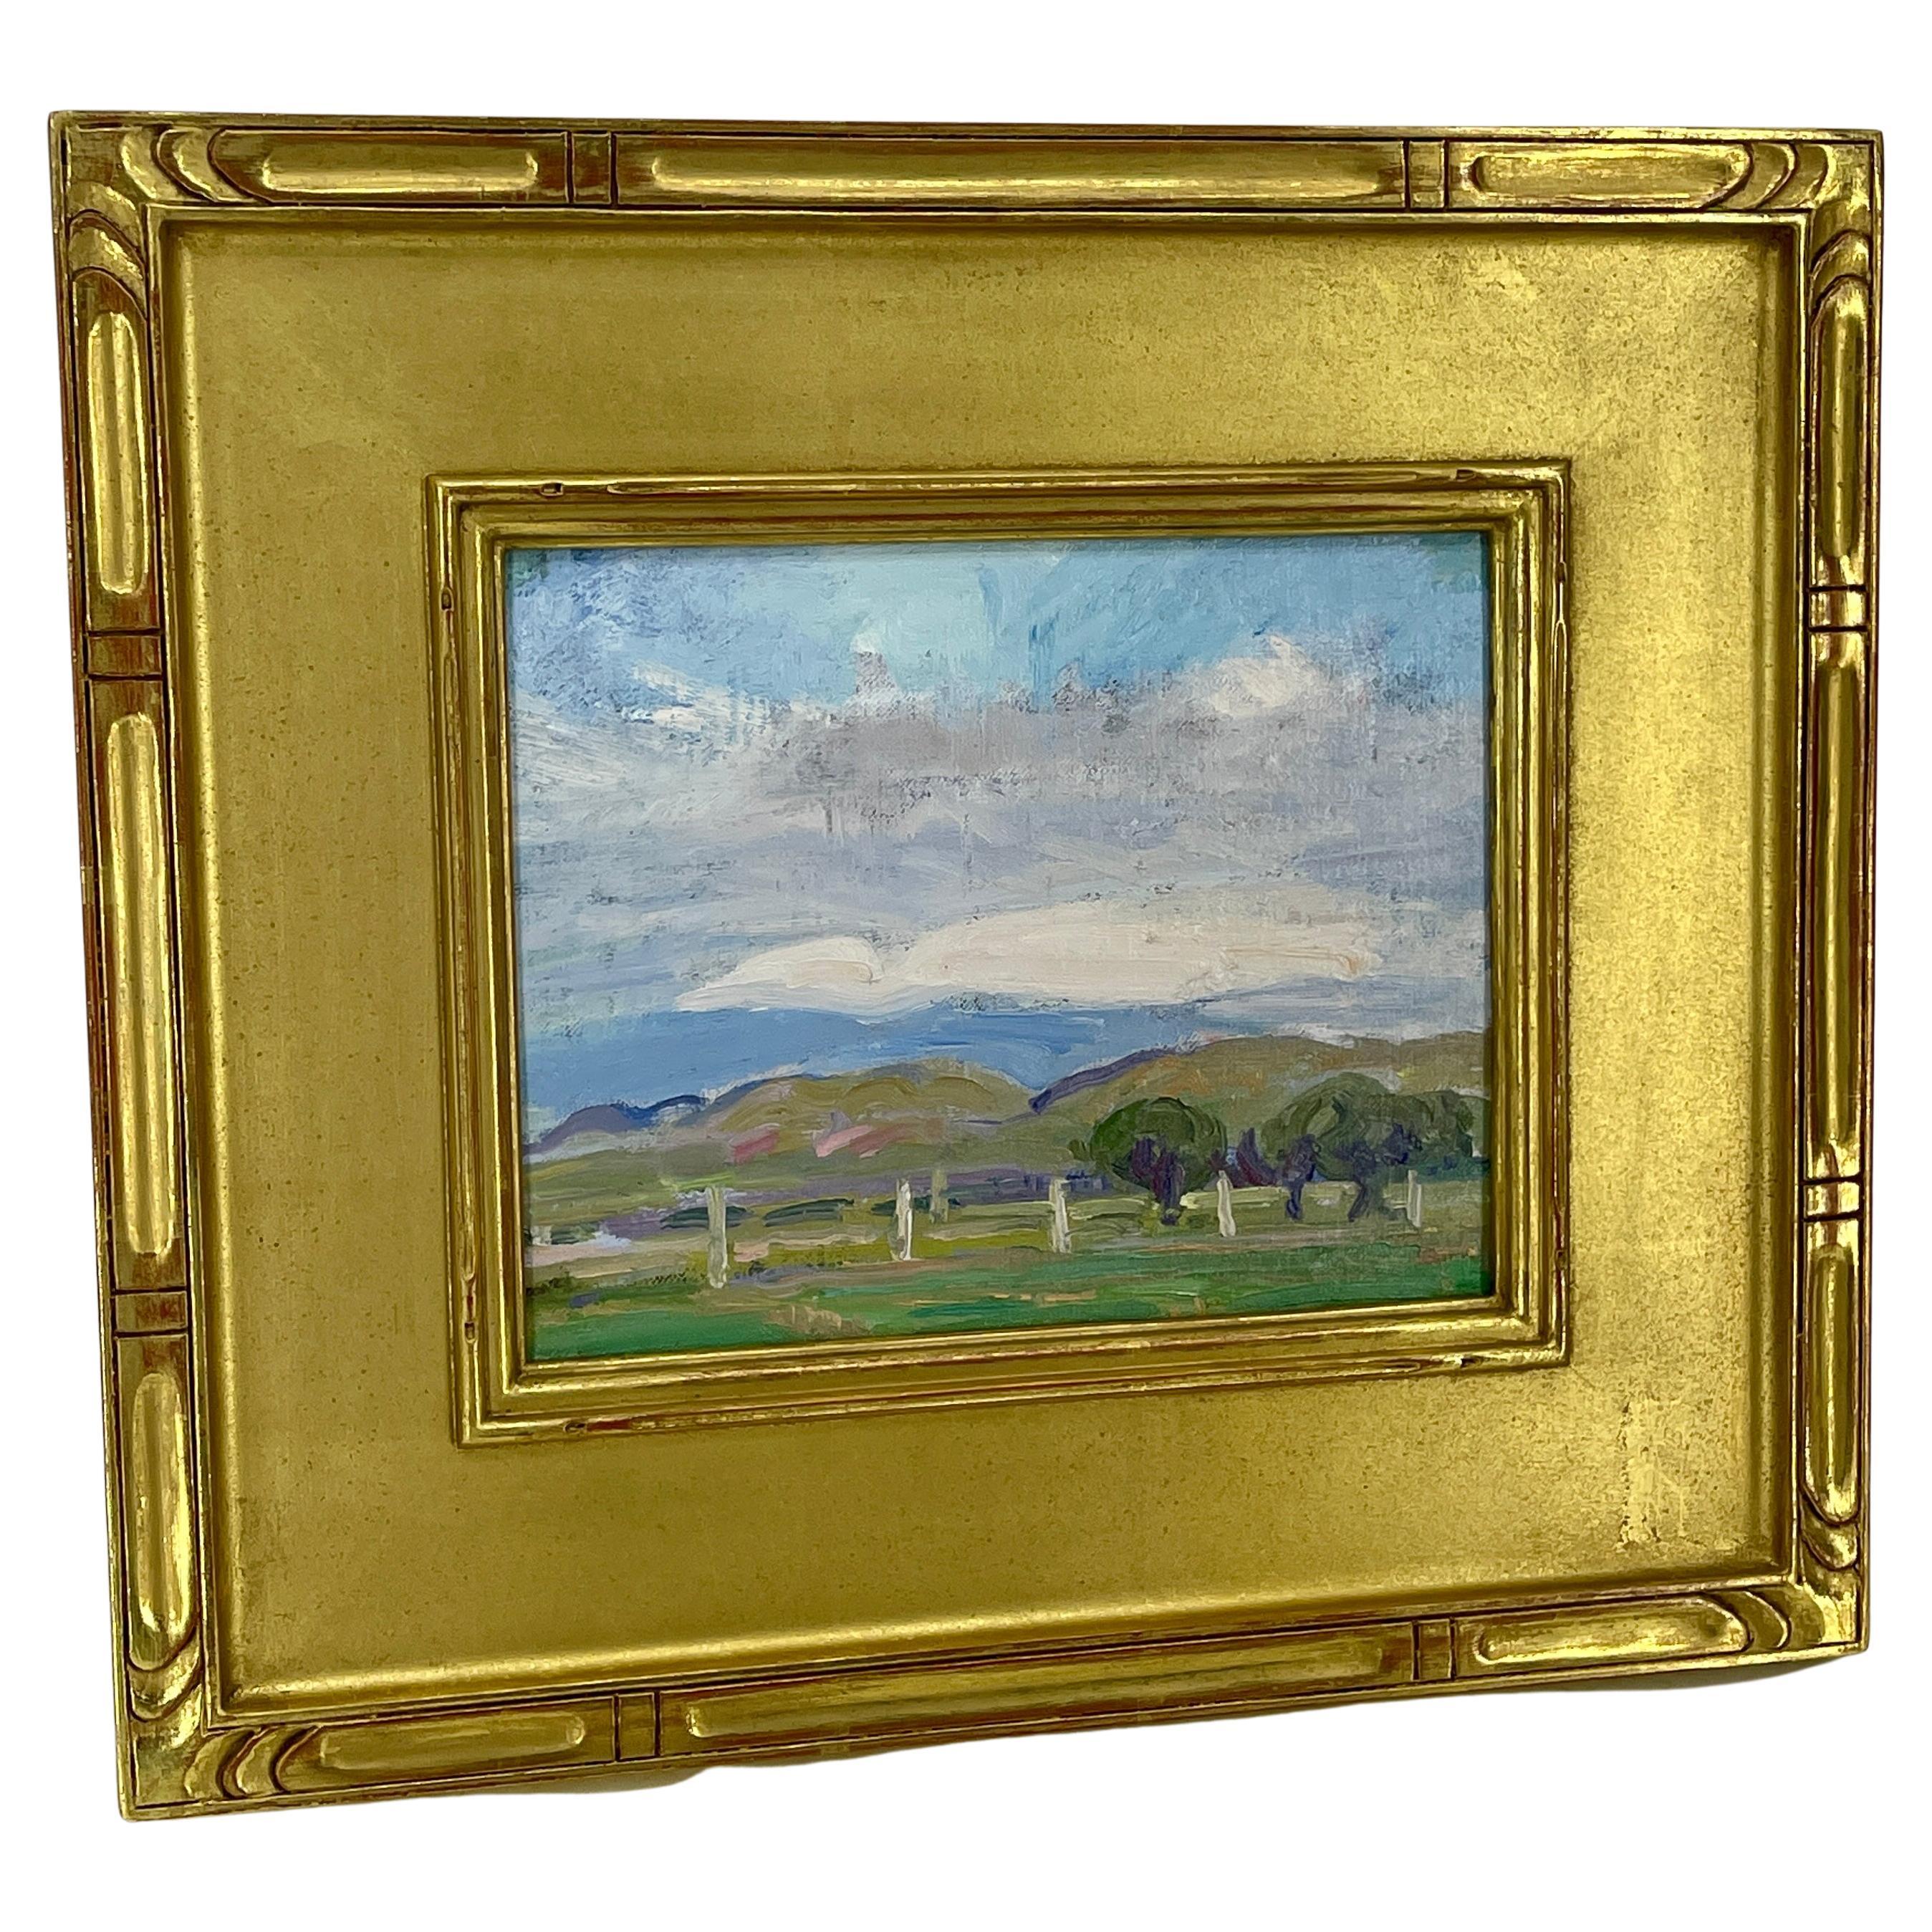 Peinture impressionniste à l'huile sur toile, paysage de campagne, France

Peinture à l'huile sur toile provenant de la succession de Richard Horace Bassett (1900 - 1995). L'artiste a étudié et peint en Europe dans les années 1920 et 1930, et